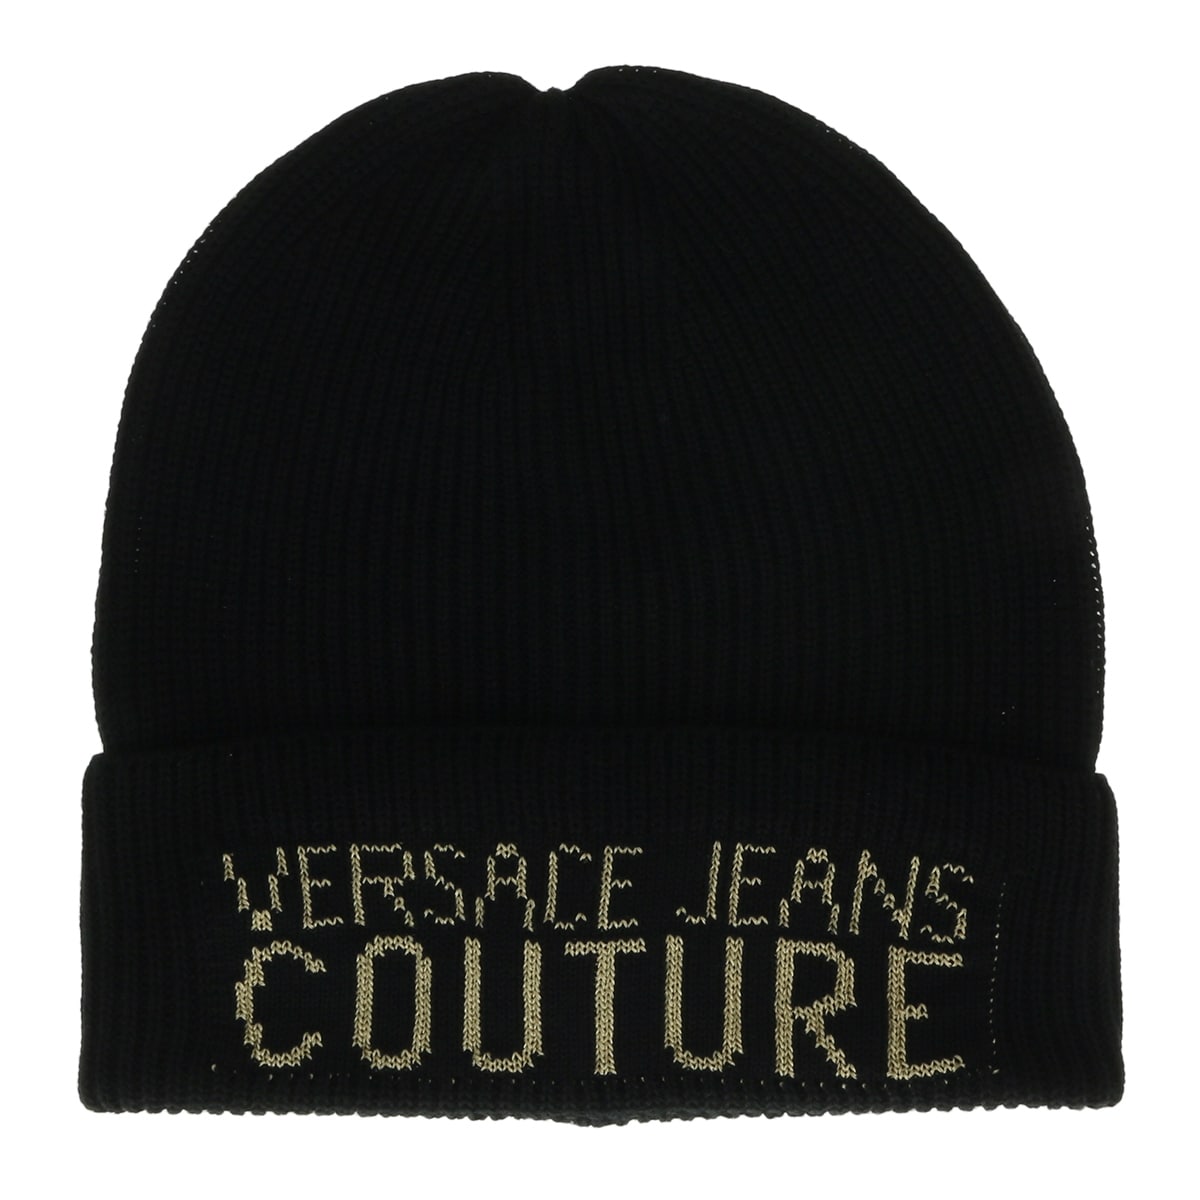 versace jeans hat